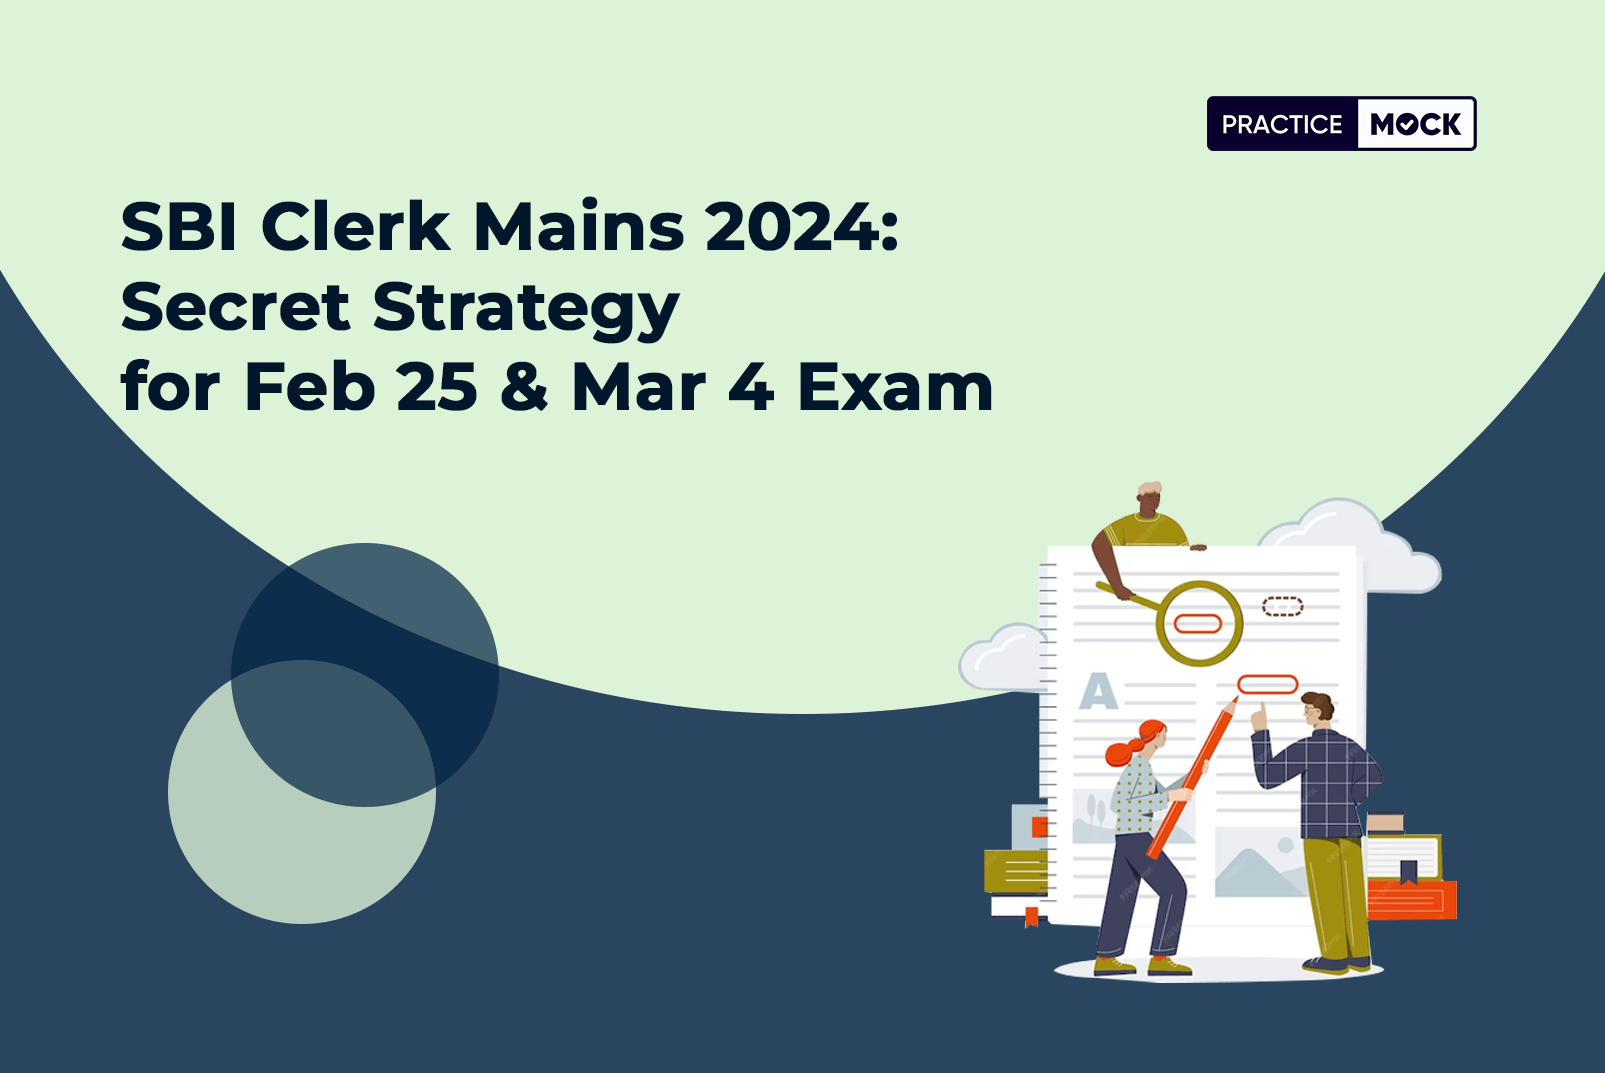 SBI Clerk Mains 2024: Secret Strategy for Feb 25 & Mar 4 Exam